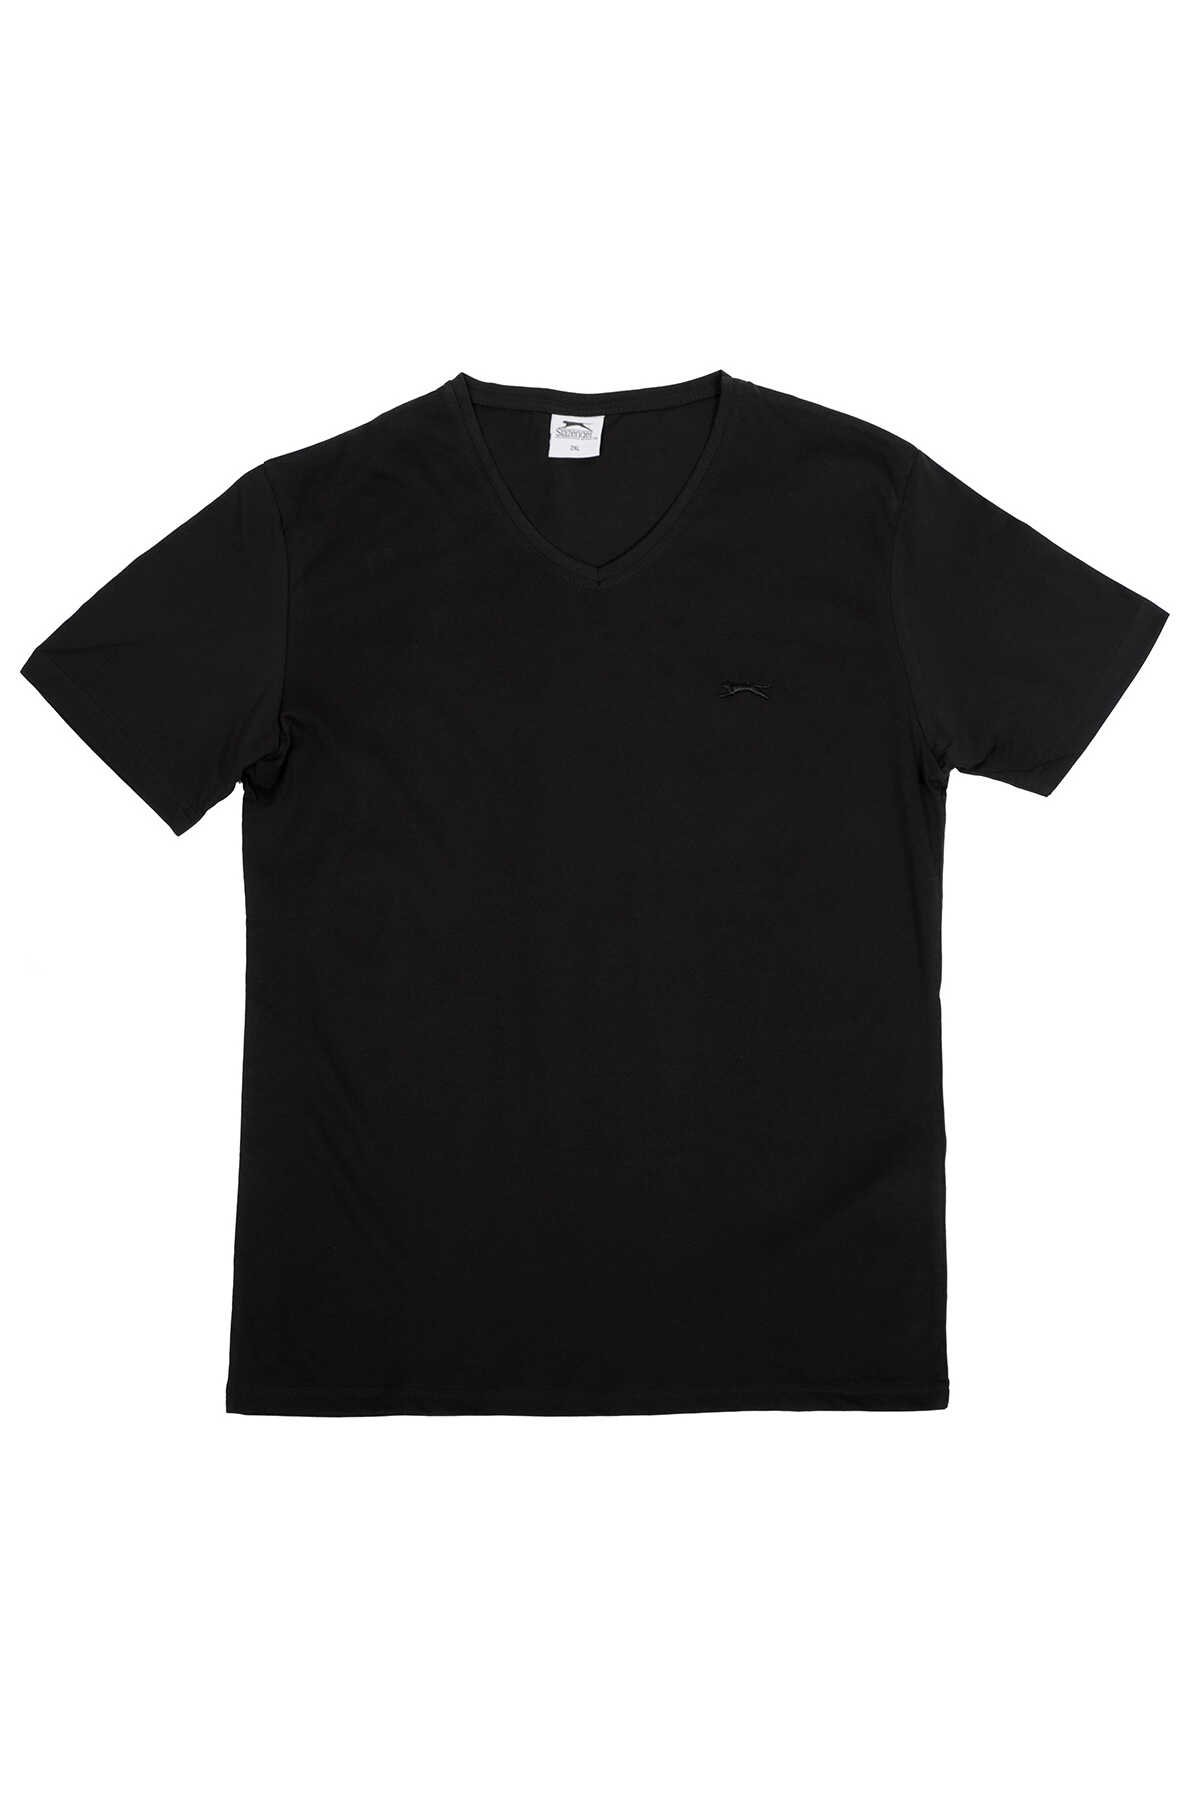 Slazenger - Slazenger SARGON KTN Büyük Beden Erkek Kısa Kol T-Shirt Siyah